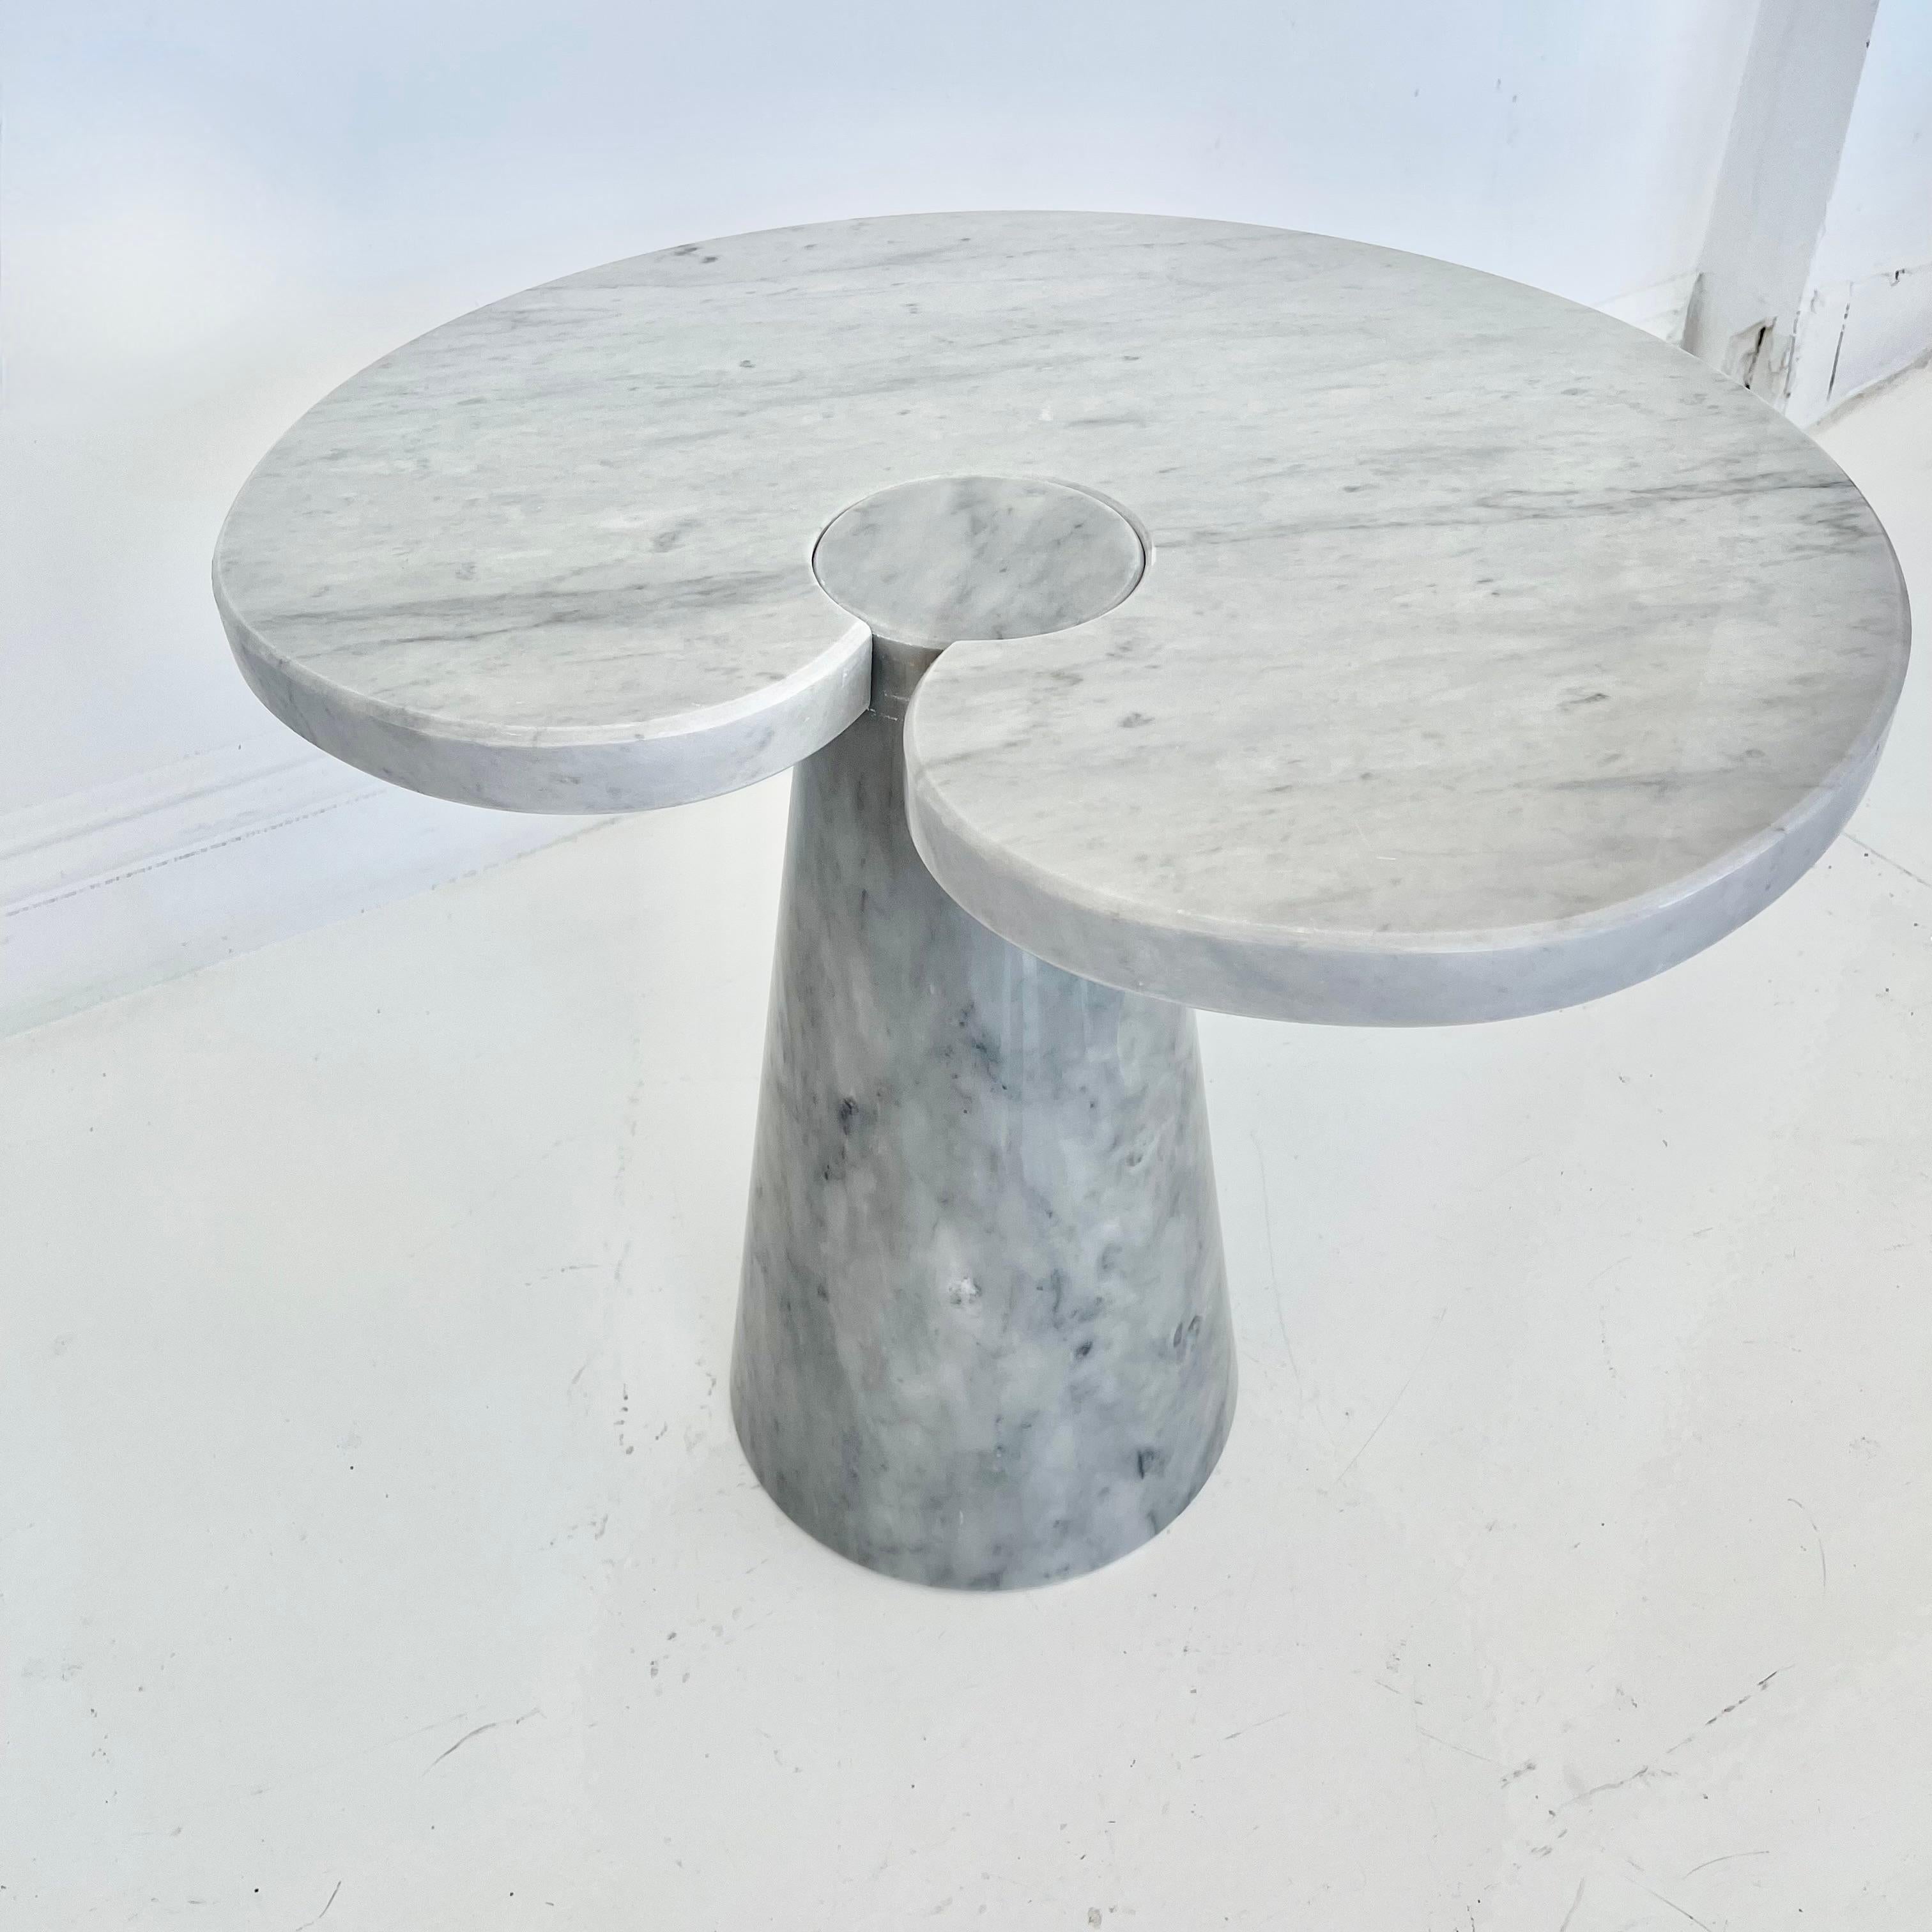 Wunderschöner Beistelltisch aus Carrara-Marmor, entworfen von Angelo Mangiarotti für Skipper in den 1970er Jahren. Ein großer, kegelförmiger Sockel hält eine große, seerosenförmige Marmorplatte mit einem kreisförmigen Ausschnitt, der um die